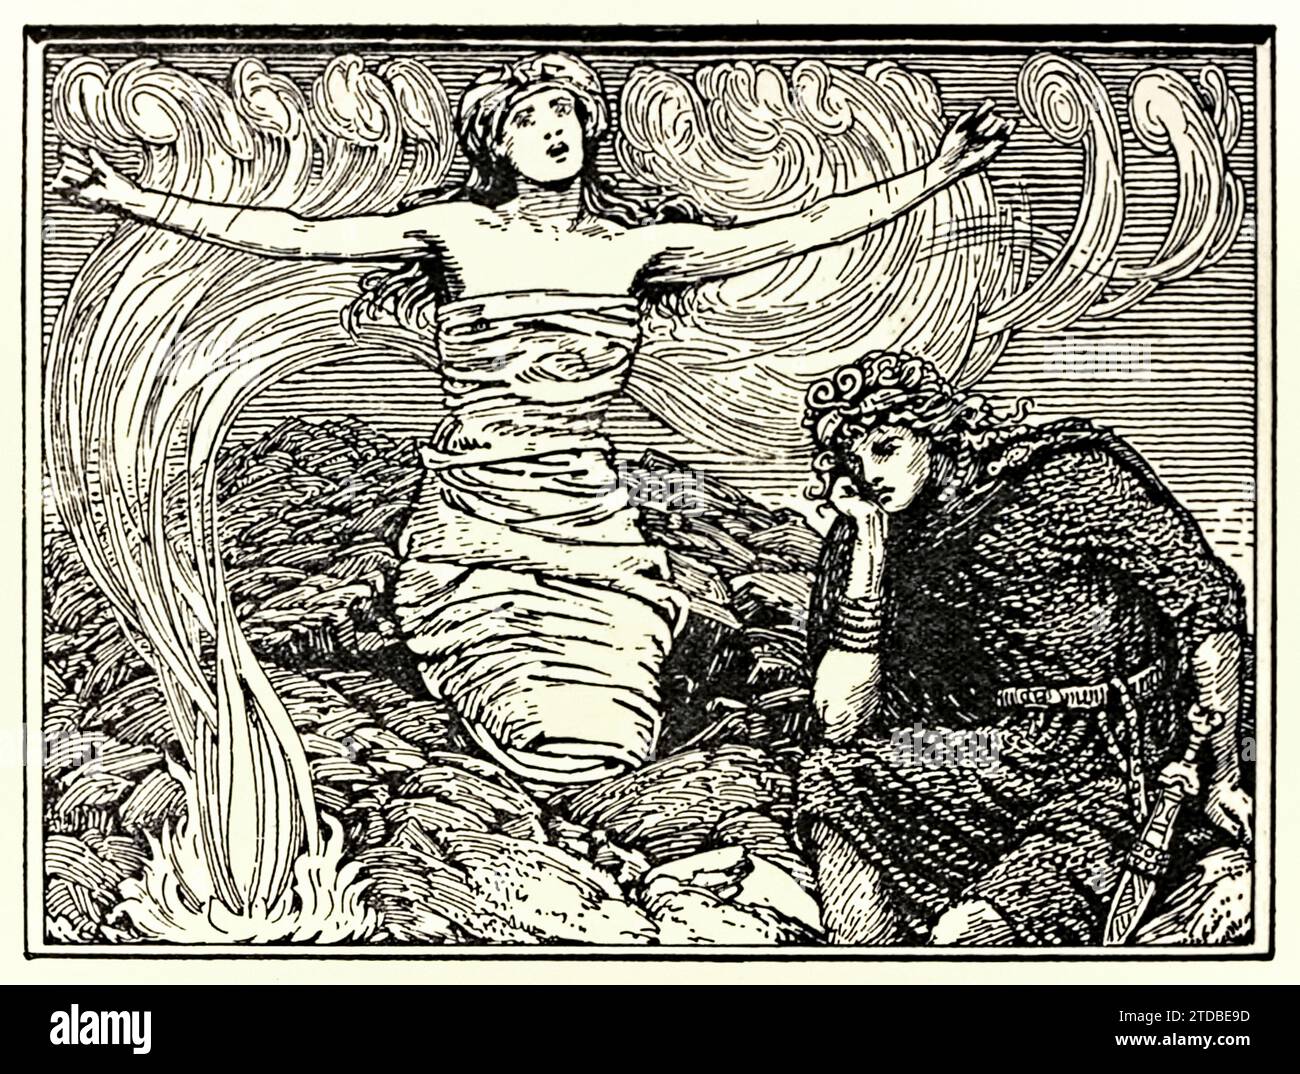 „Groas Zauberspruch“ aus der „poetischen Edda“, einer Sammlung traditioneller altnordischer Gedichte, die von Olive Bray (1878-1909) übersetzt wurde und erstmals 1908 veröffentlicht wurde. Illustration von W. G. Collingwood (1854–1932), die Gróa zeigt, eine Seherin in der nordischen Mythologie, die ihrem Sohn Svipdagr in einer Szene aus dem Gedicht Grógaldr hilft. Stockfoto